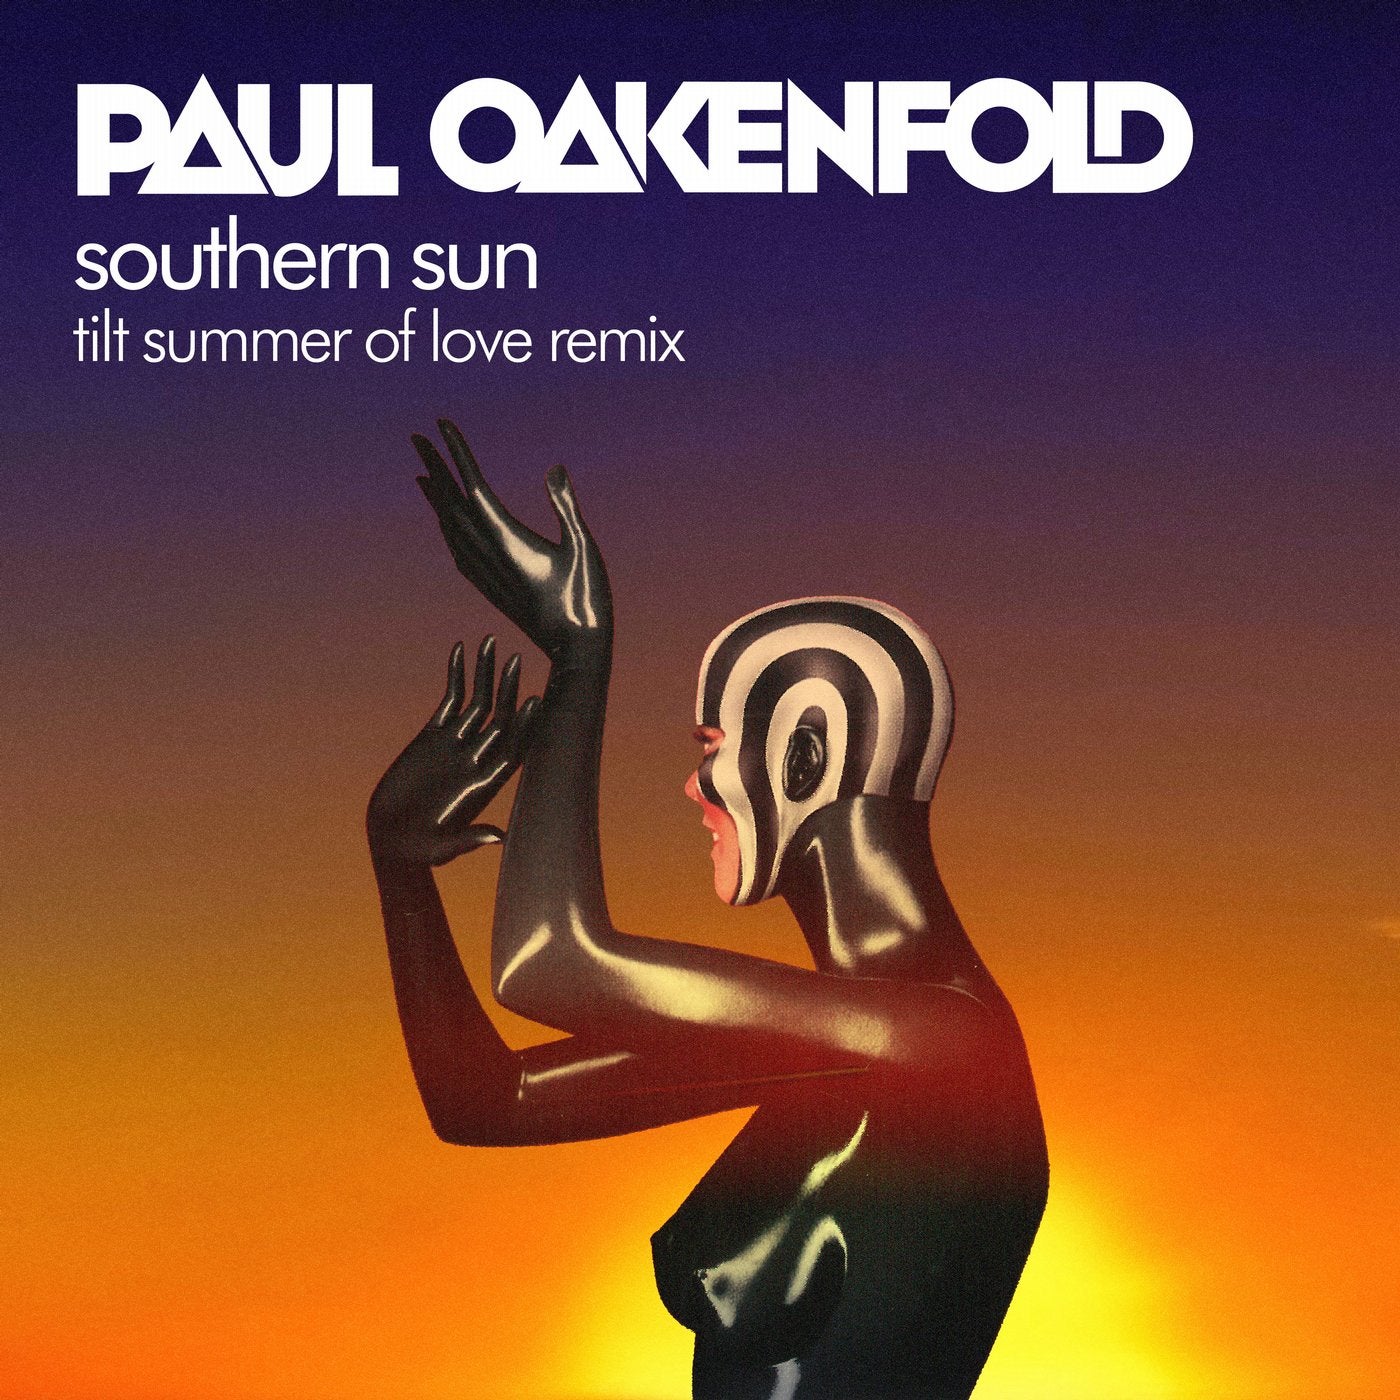 Paul oakenfold southern sun. Carla Werner Southern Sun. Paul Oakenfold Remix.